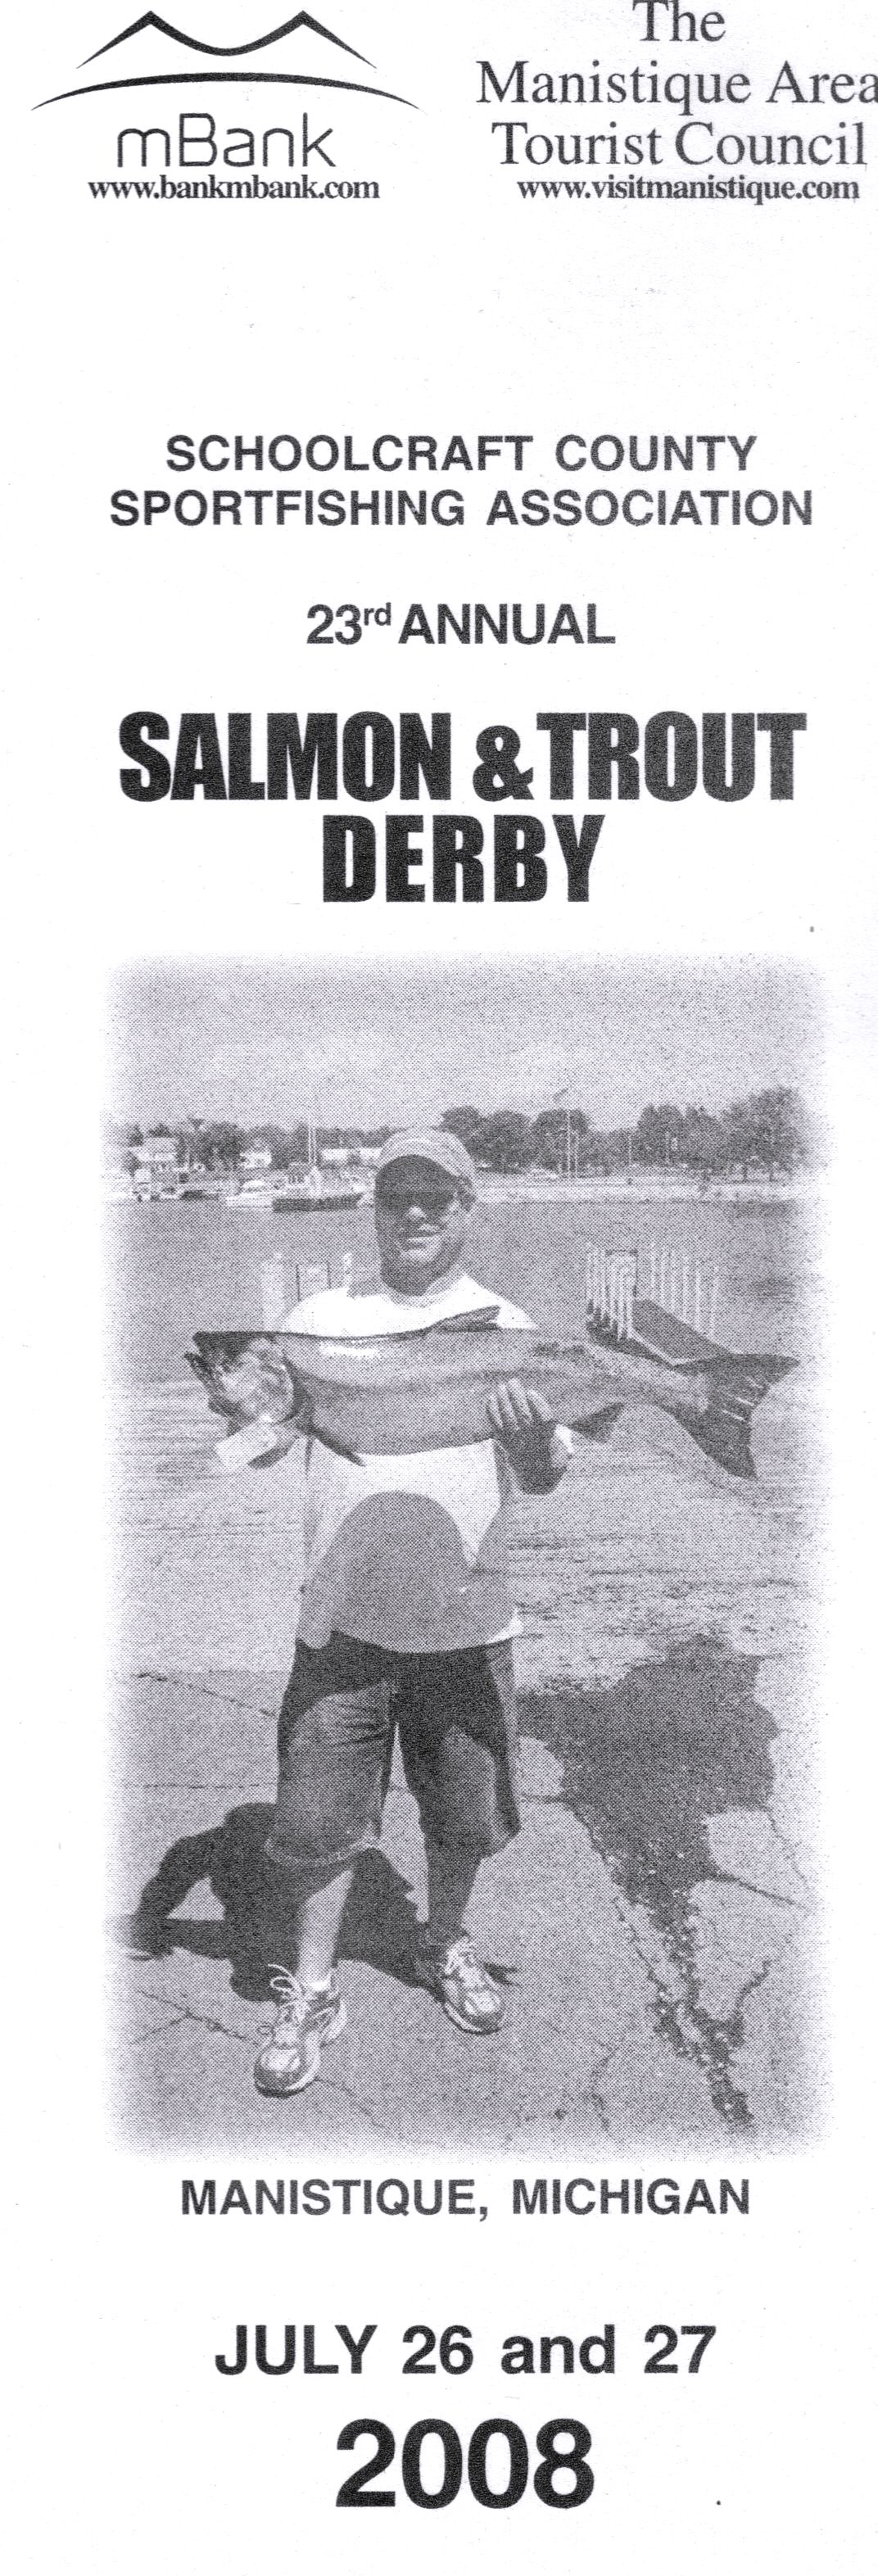 derby-header.jpg